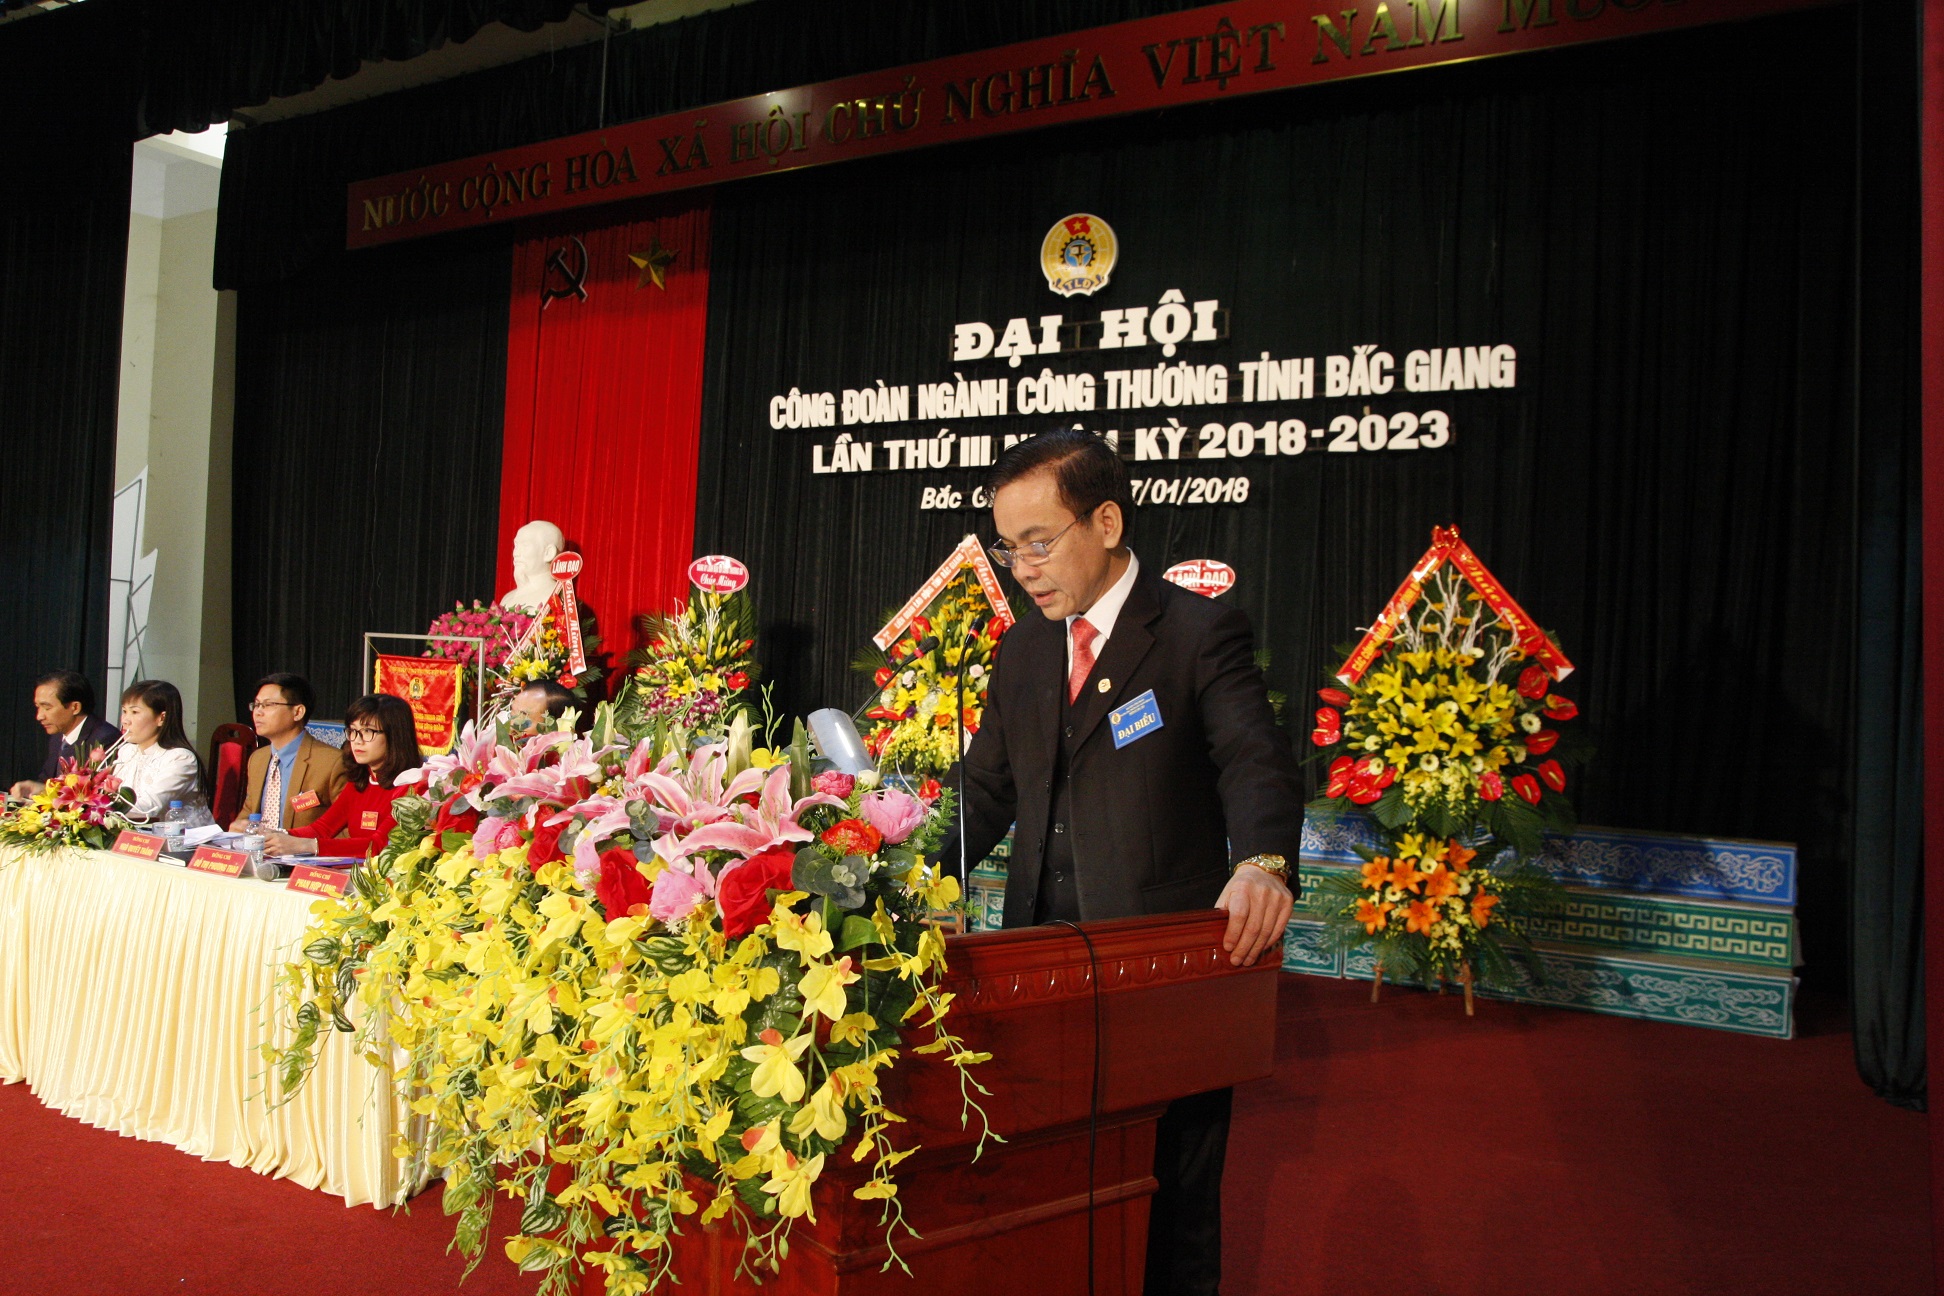 Đại hội Công đoàn ngành Công Thương tỉnh Bắc Giang lần thứ III, nhiệm kỳ 2018 - 2023